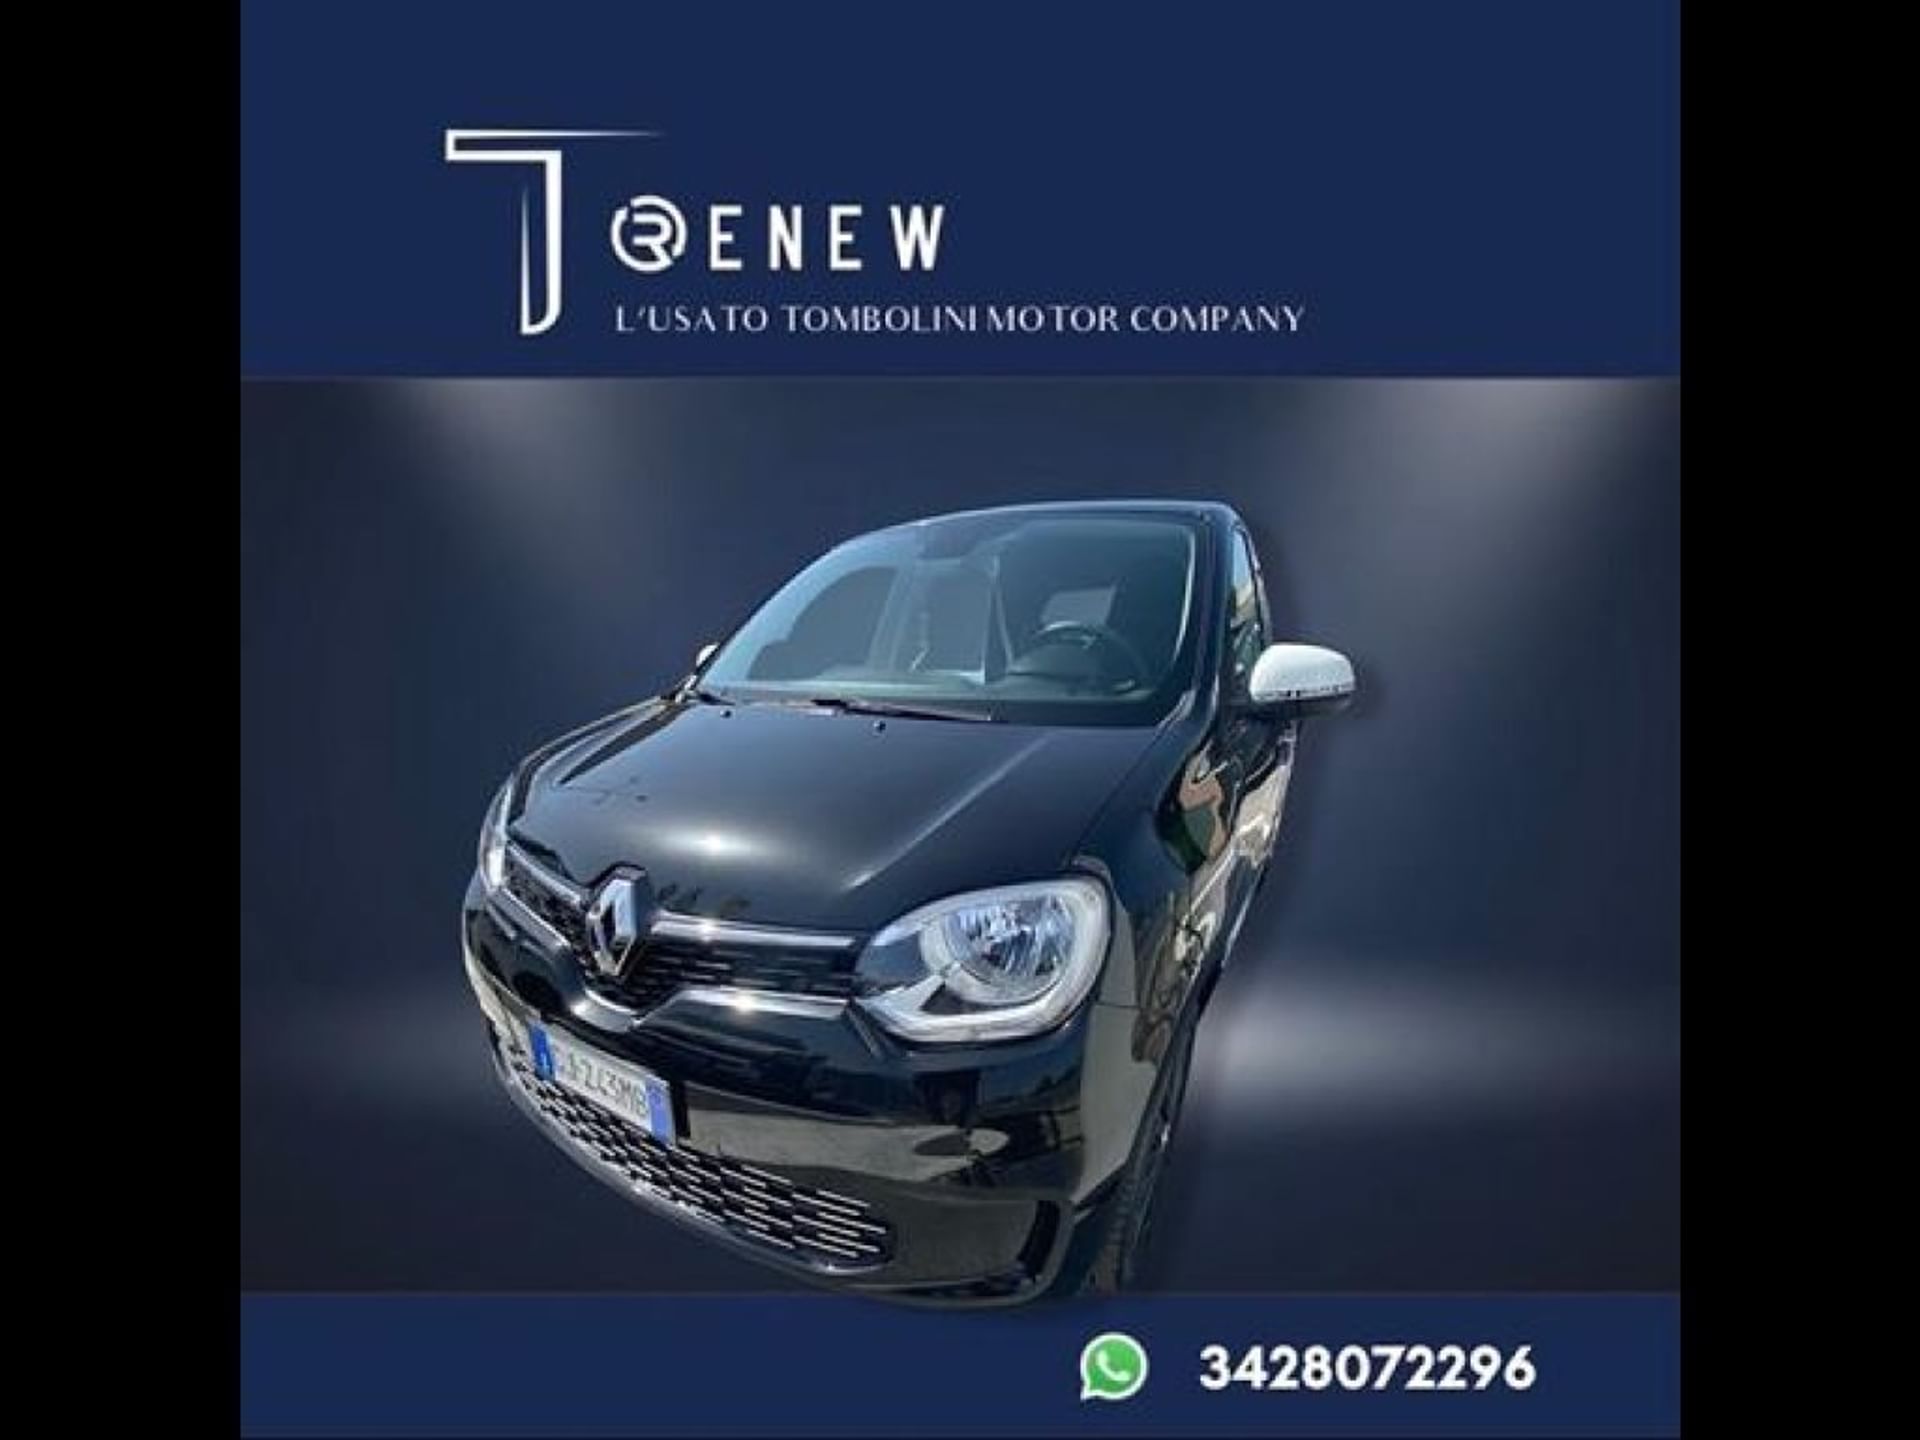 Renault Twingo 1.2i